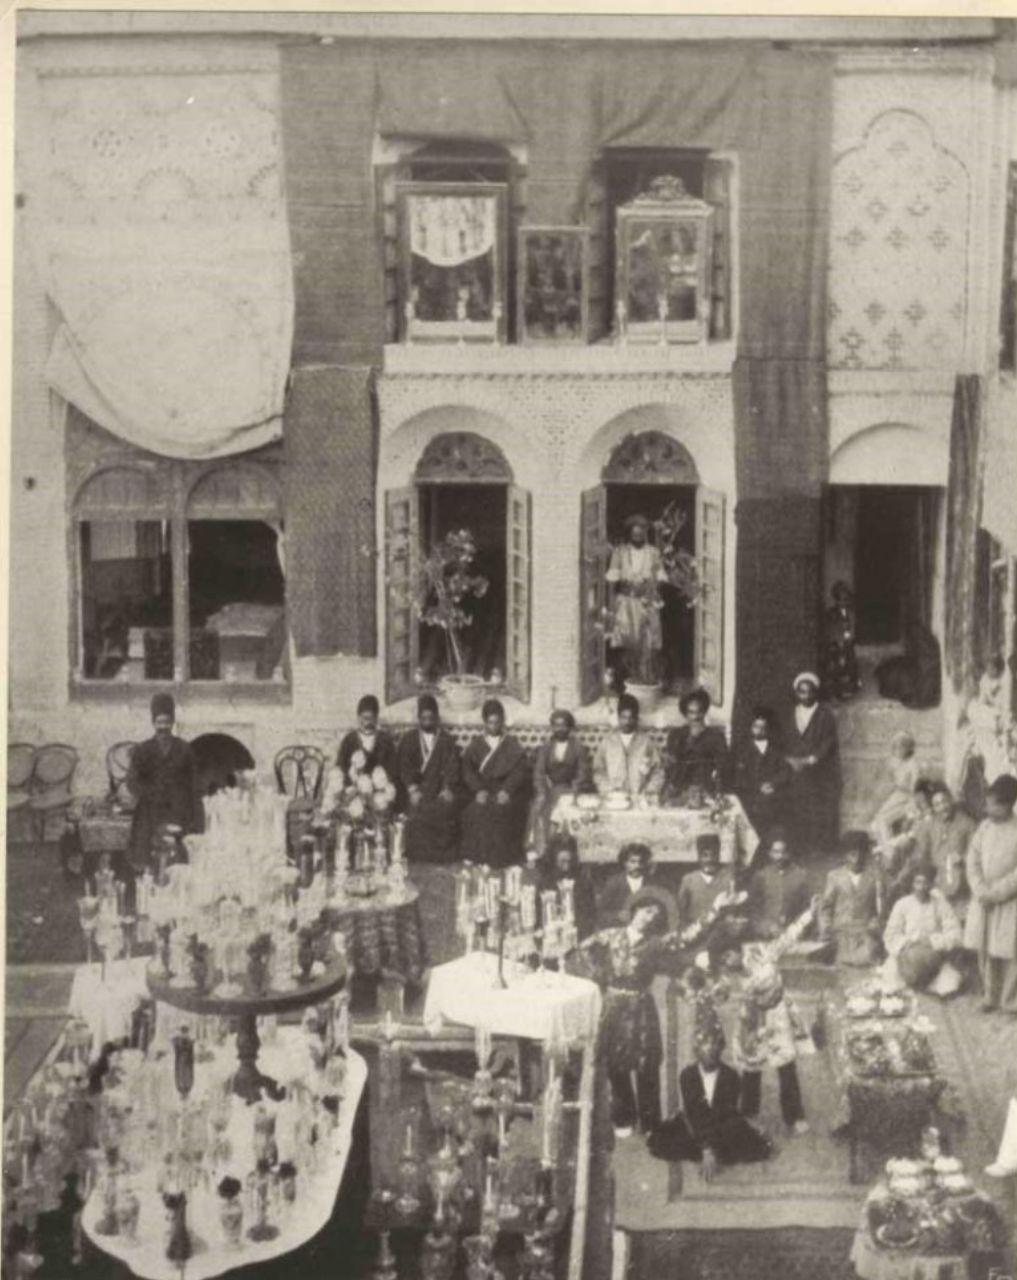 مراسم عروسی لاکچری در دوره قاجار